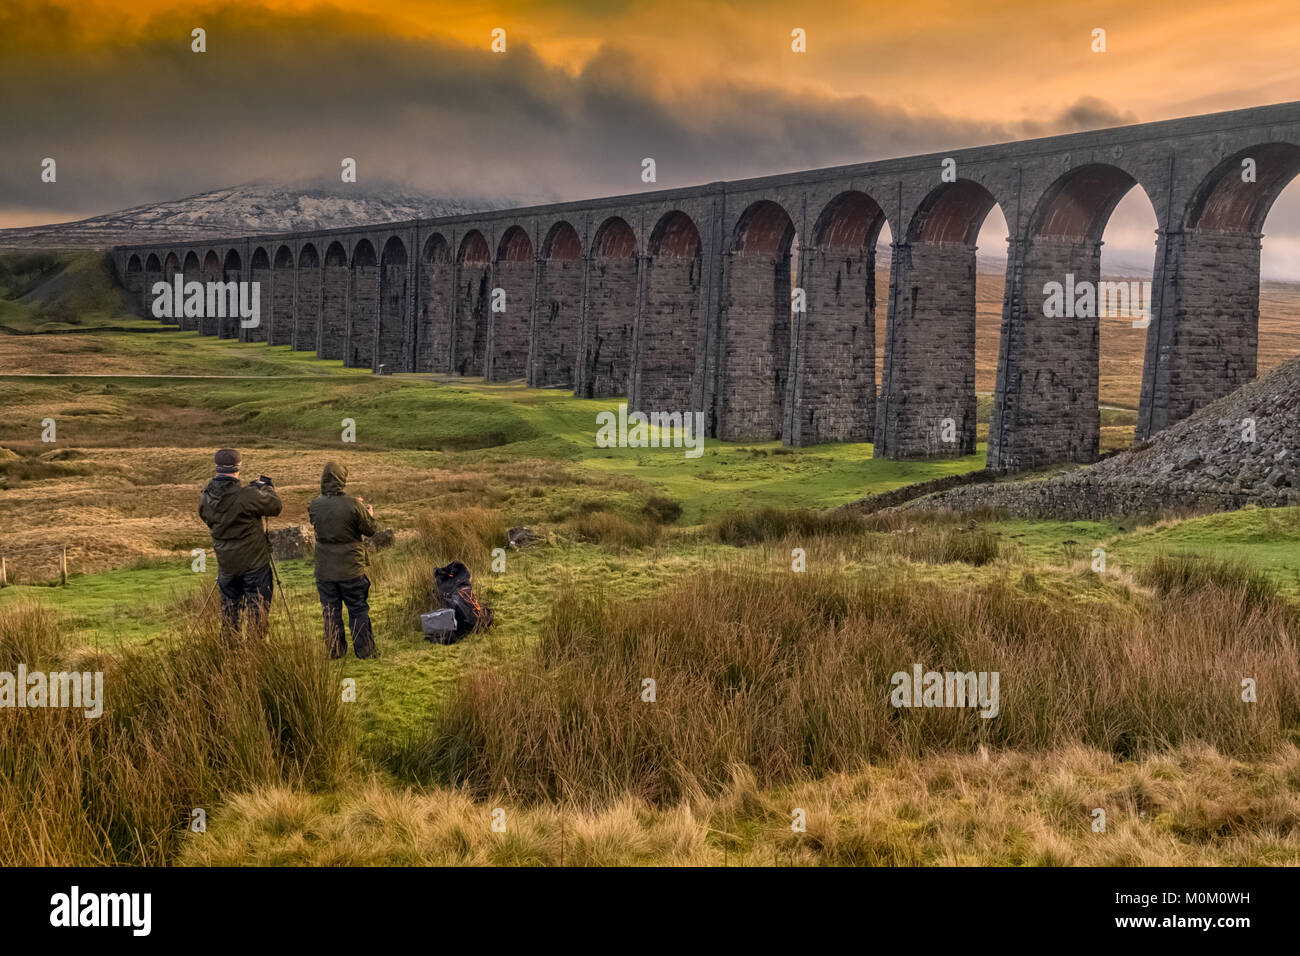 Los fotógrafos capturar la majestuosidad de Ribblehead viaducto sobre el ferrocarril Settle-Carlisle Foto de stock